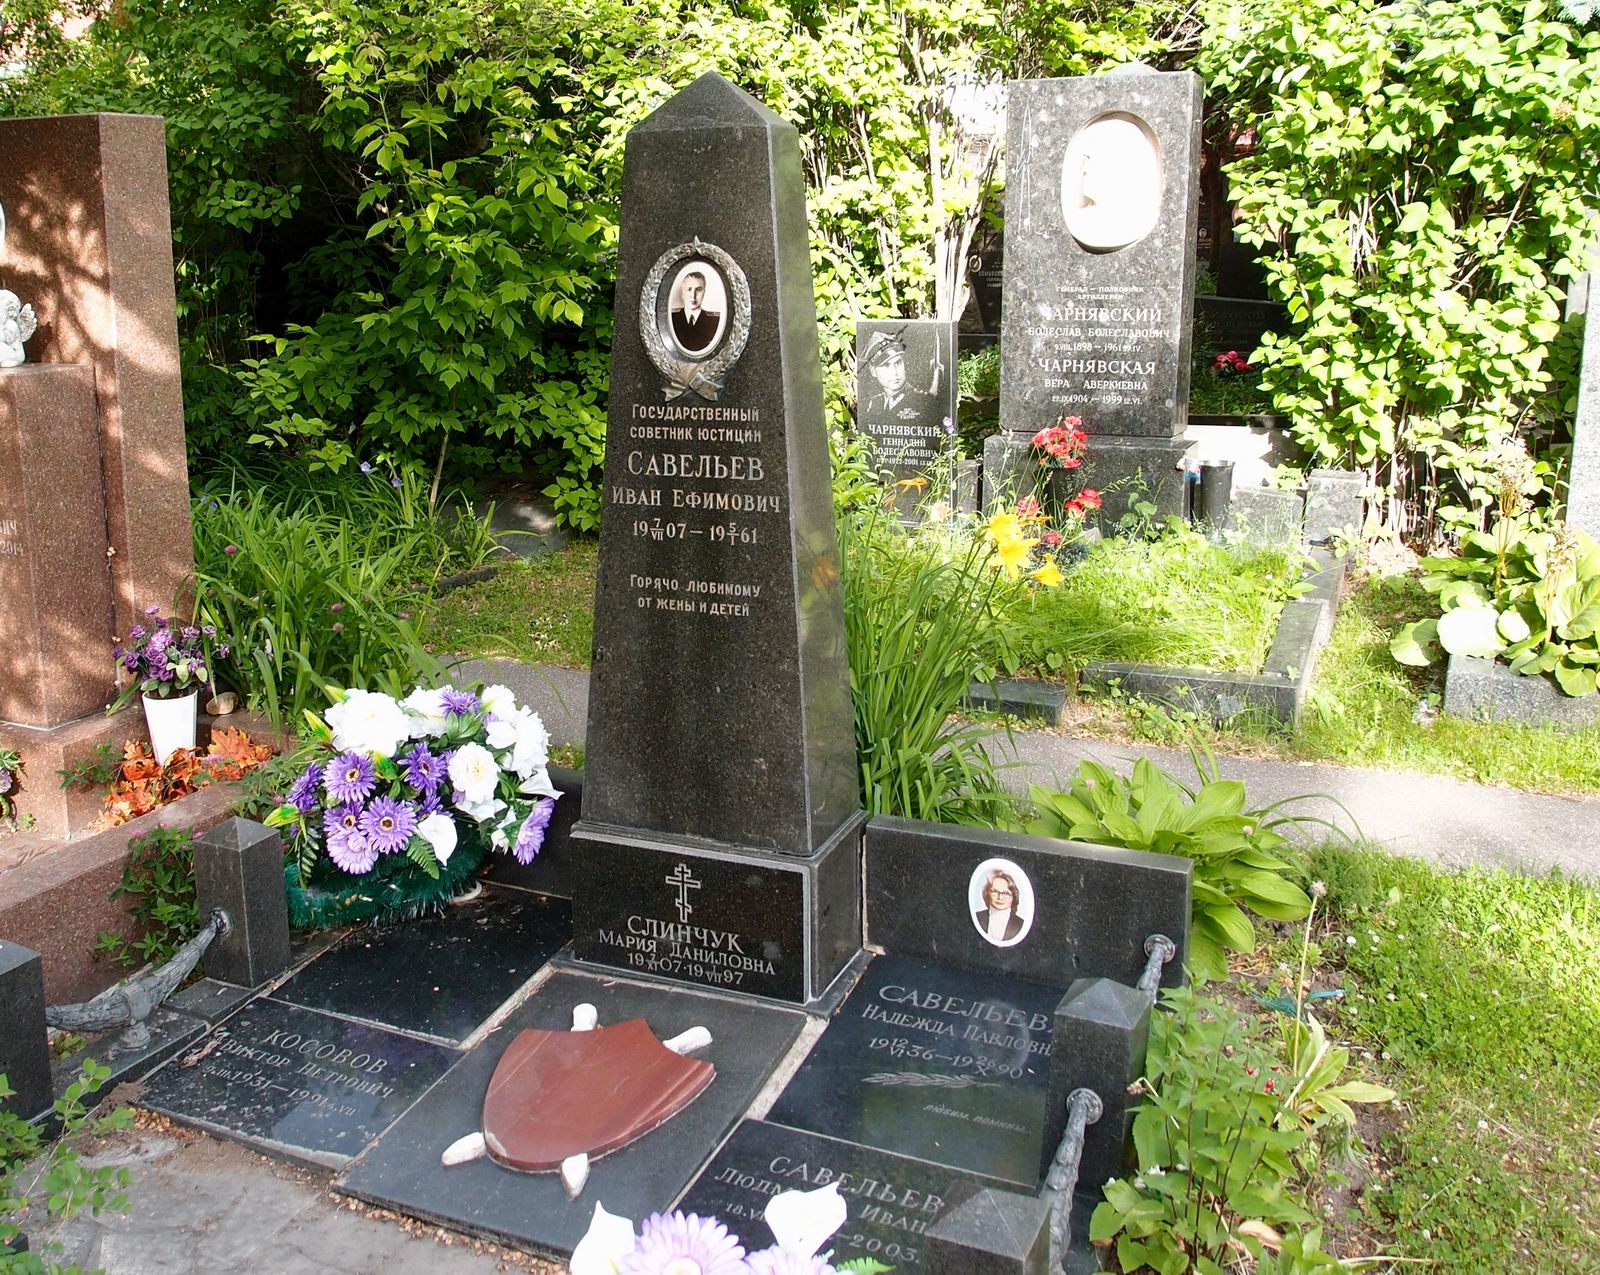 Памятник на могиле Савельева И.Е. (1907-1961), на Новодевичьем кладбище (8-9-5).